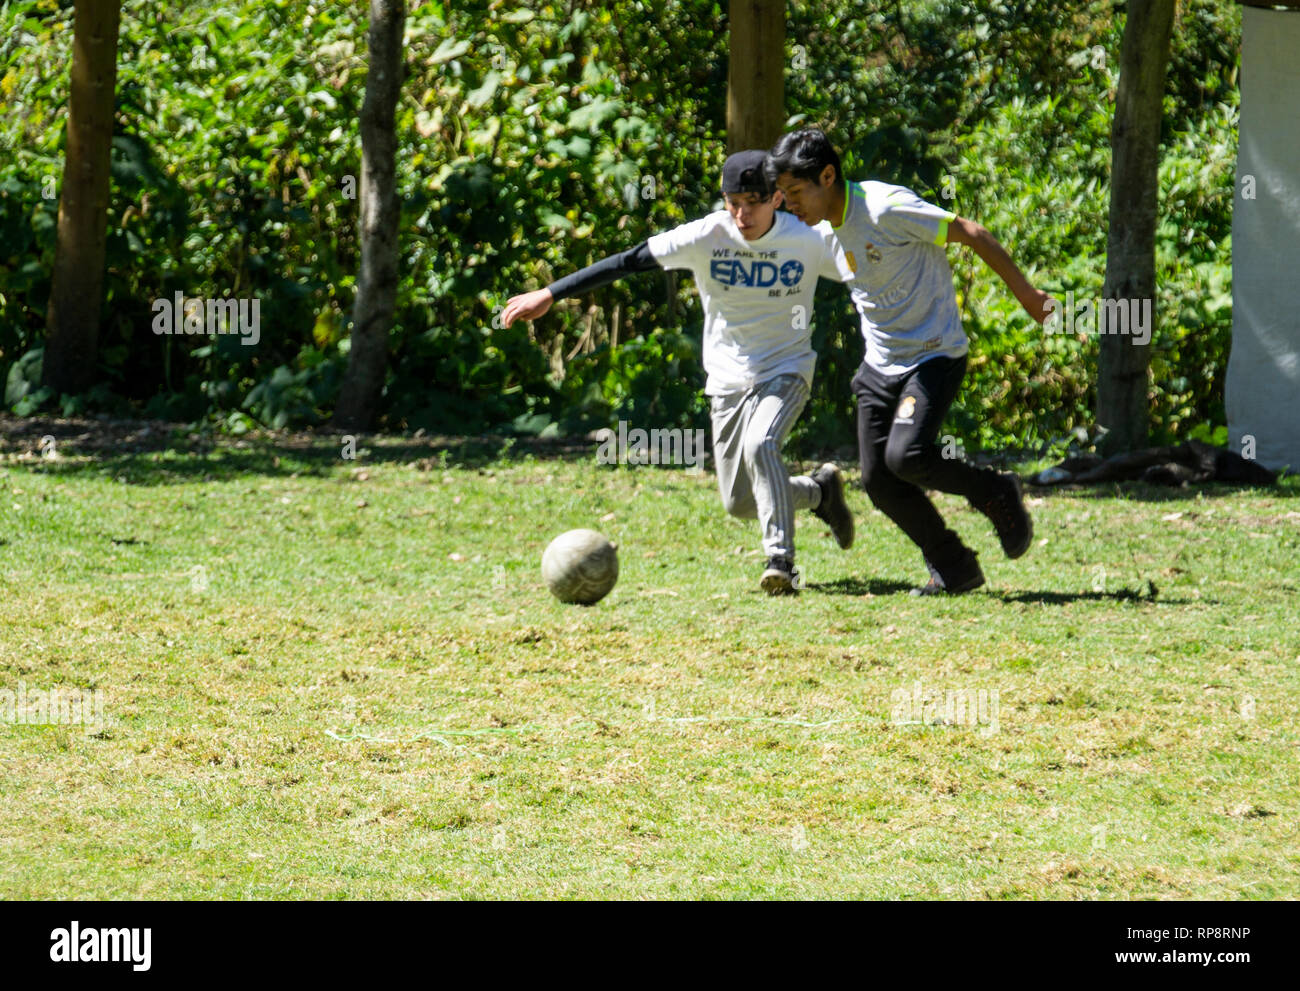 Teenager Jungs spielen Futbol (Fußball) in der Mittagssonne in Peru. Stockfoto